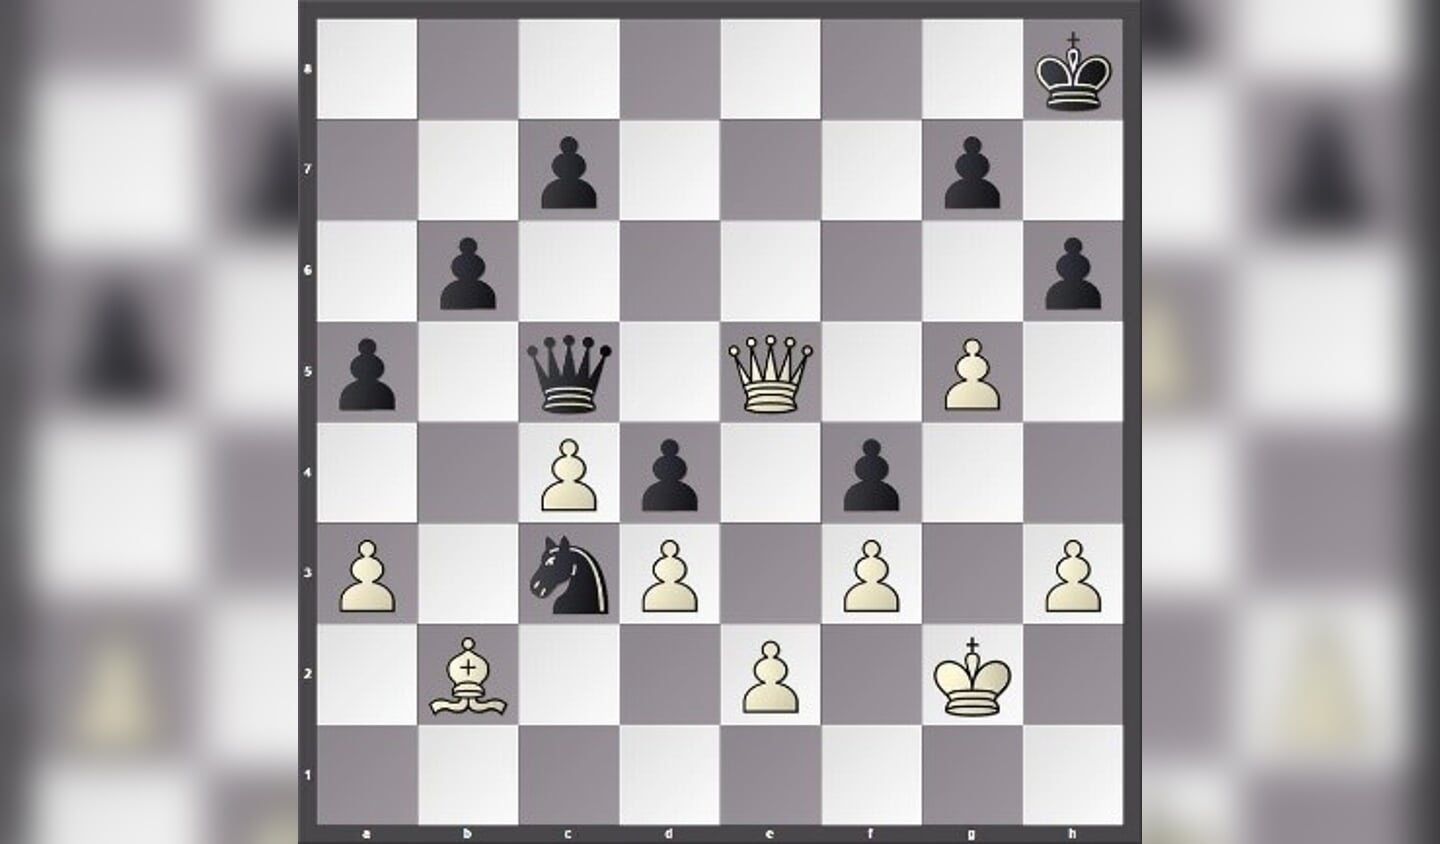 In het probleem links wint wit via 1. De8+ zwart moet Kh7 spelen en wit dan 2. g6 schaakmat. 